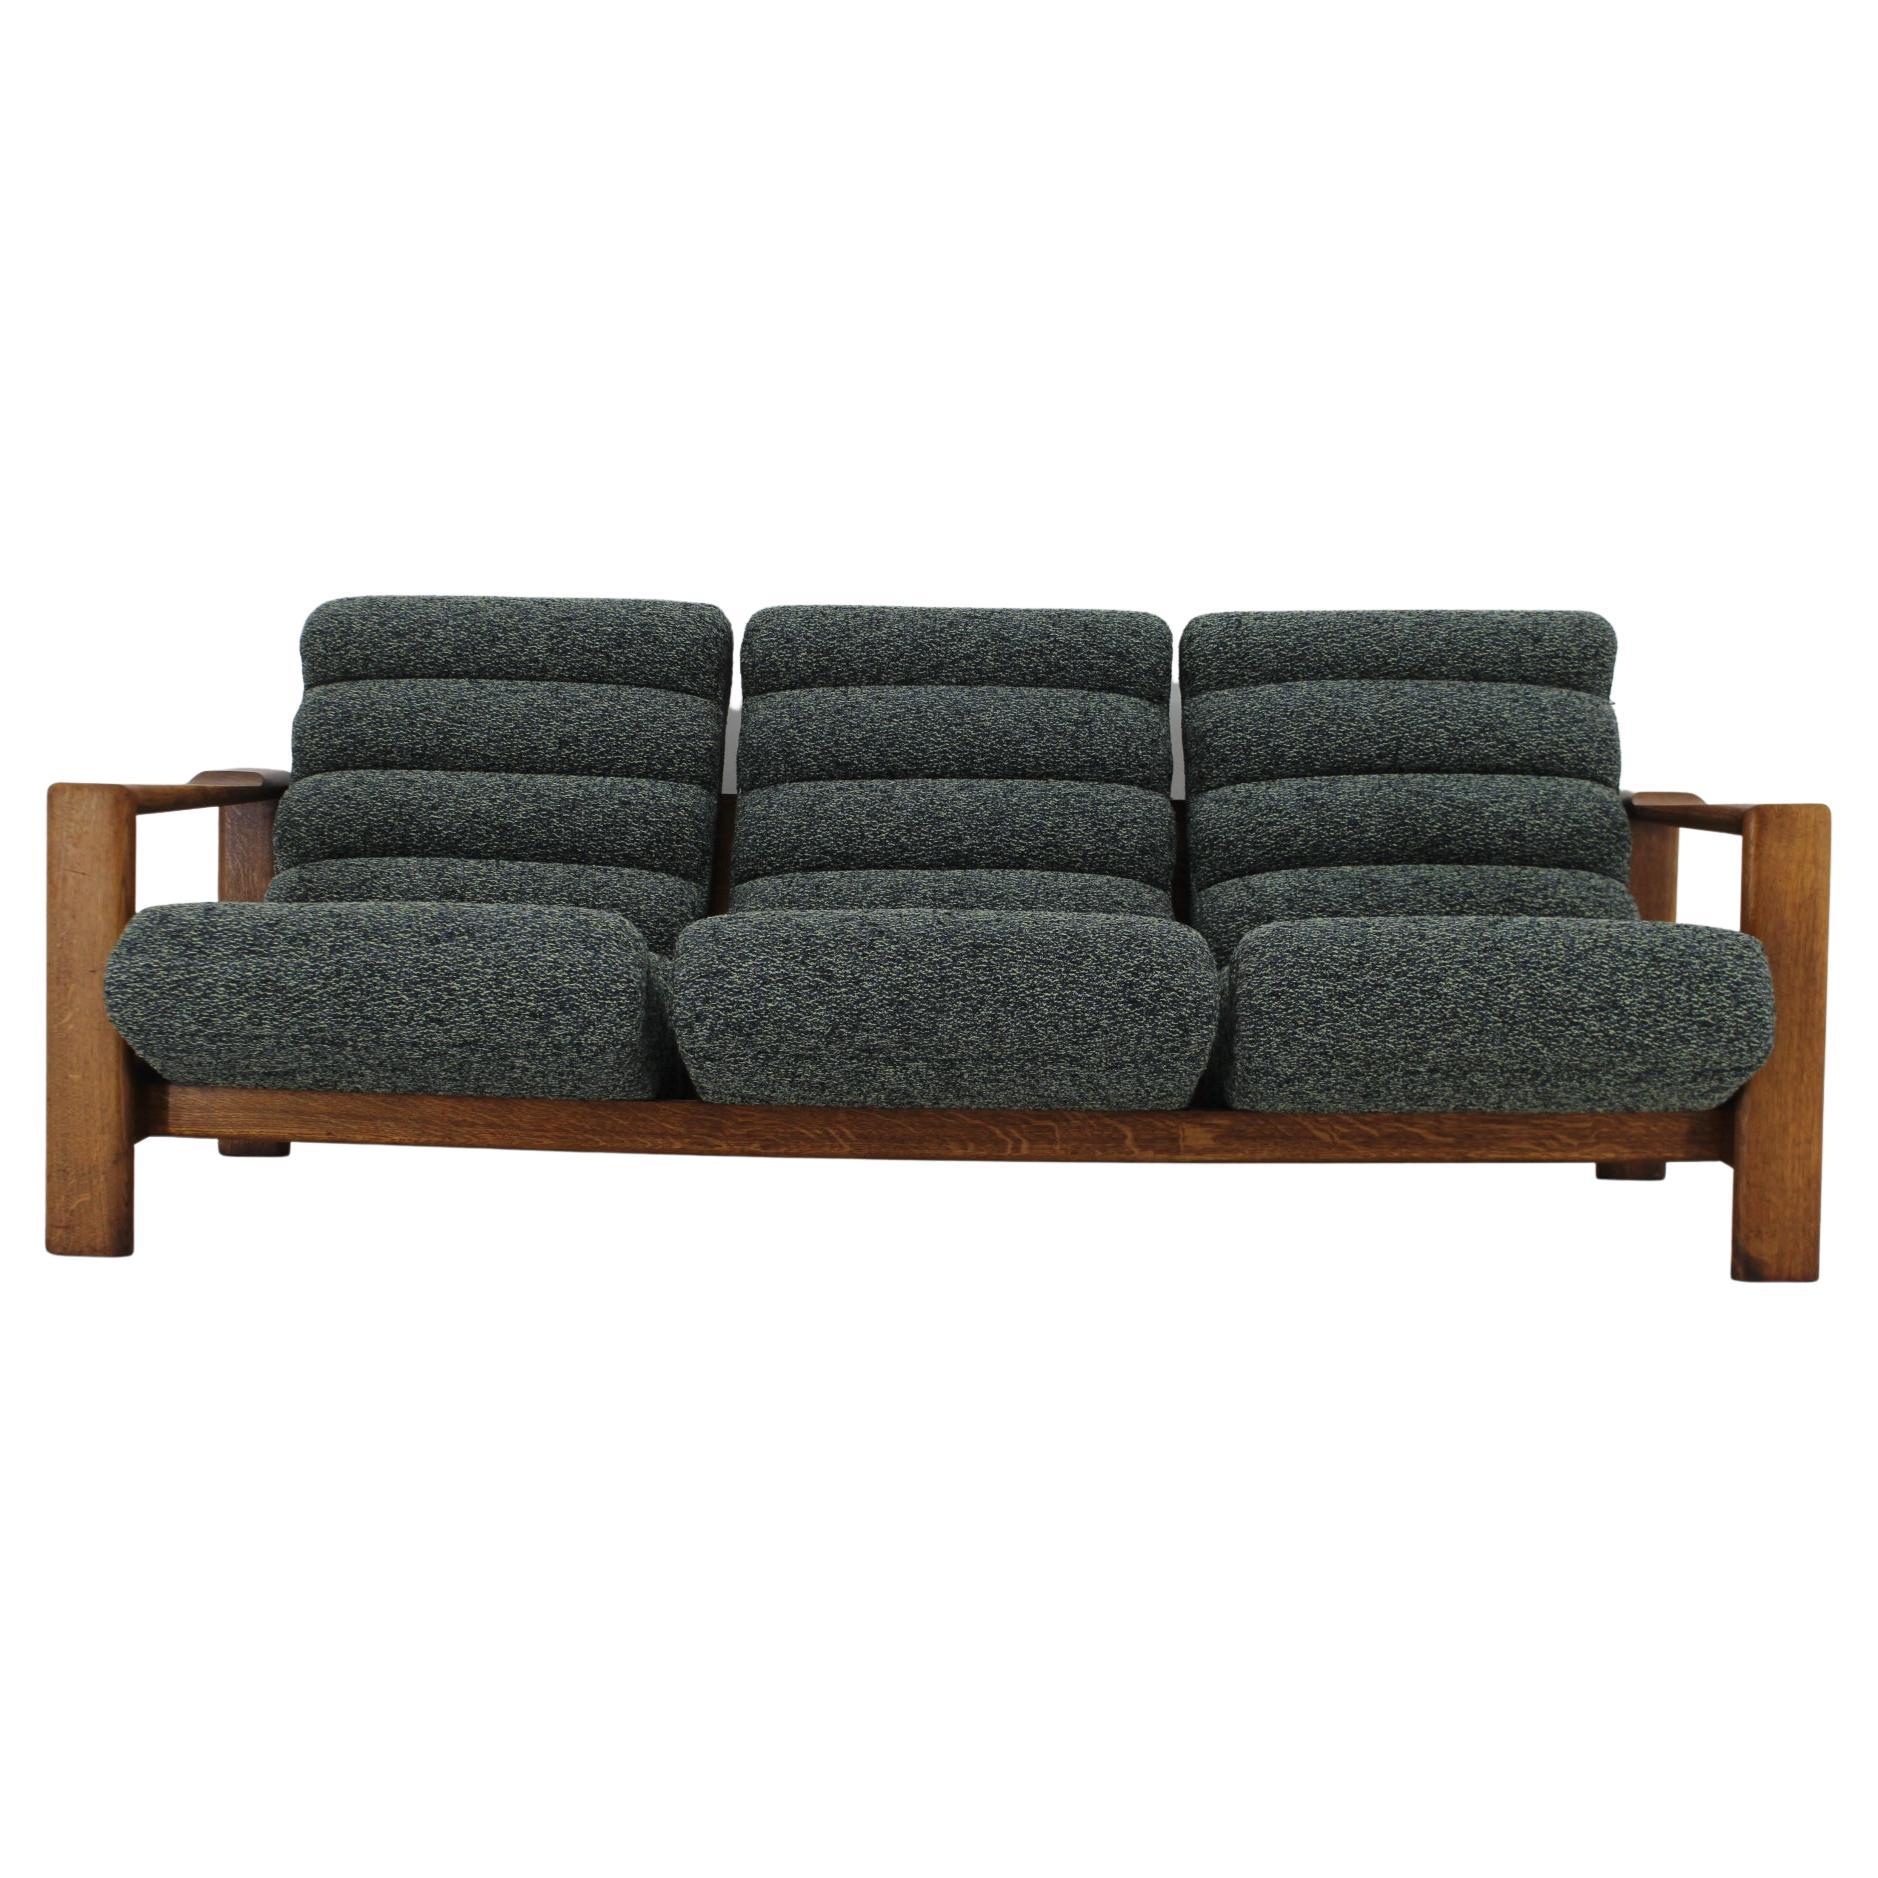 1960s Rare 3-Seater Oak Sofa, Finland